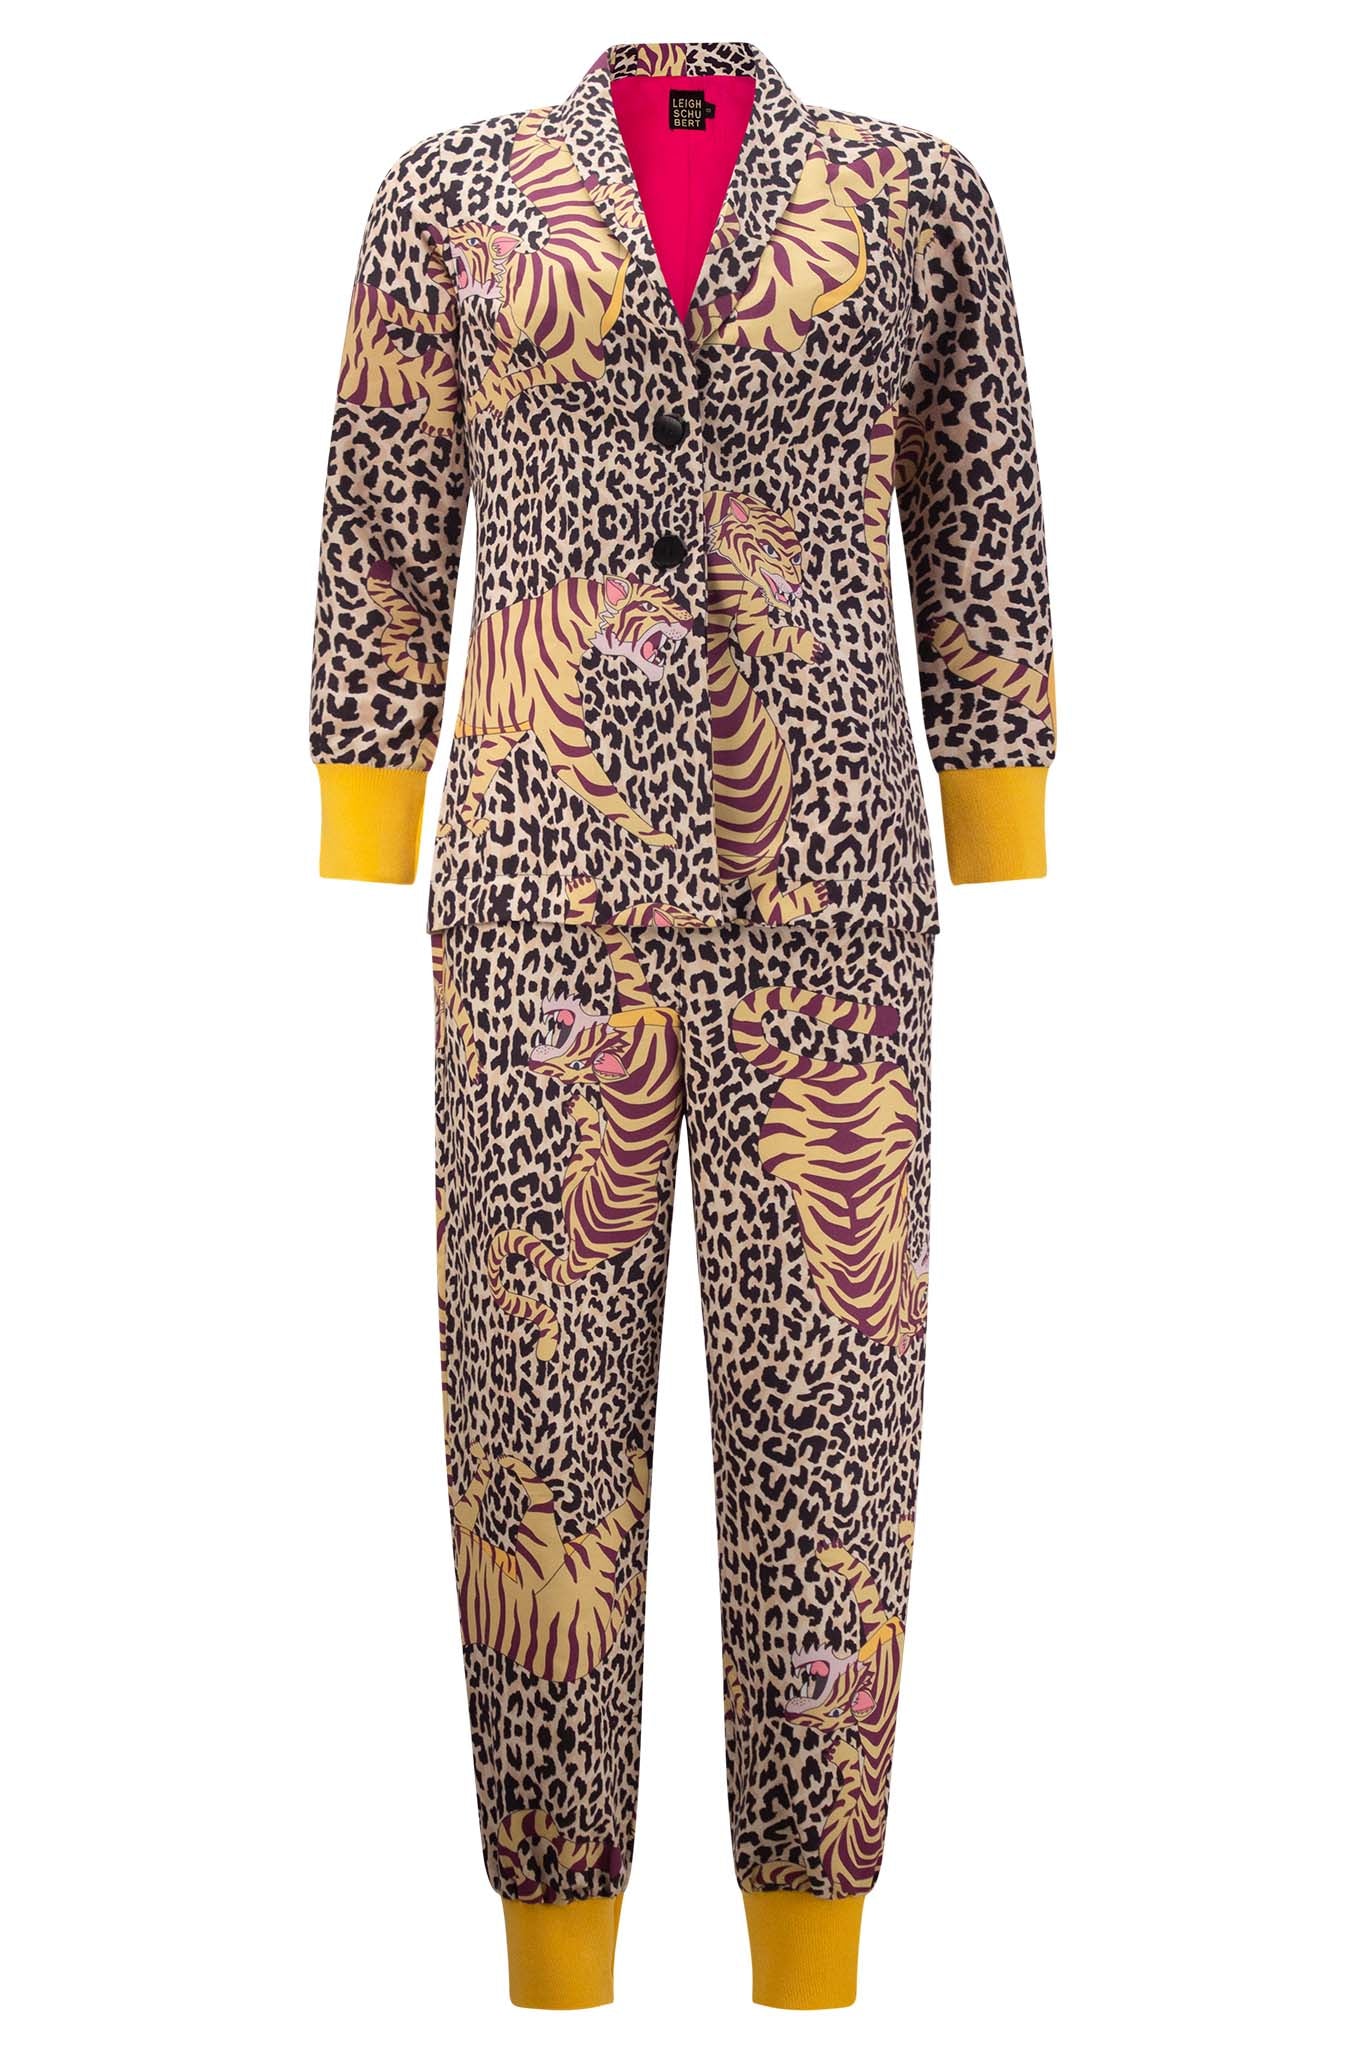 BONGLES Pants Leopard Tiger Print